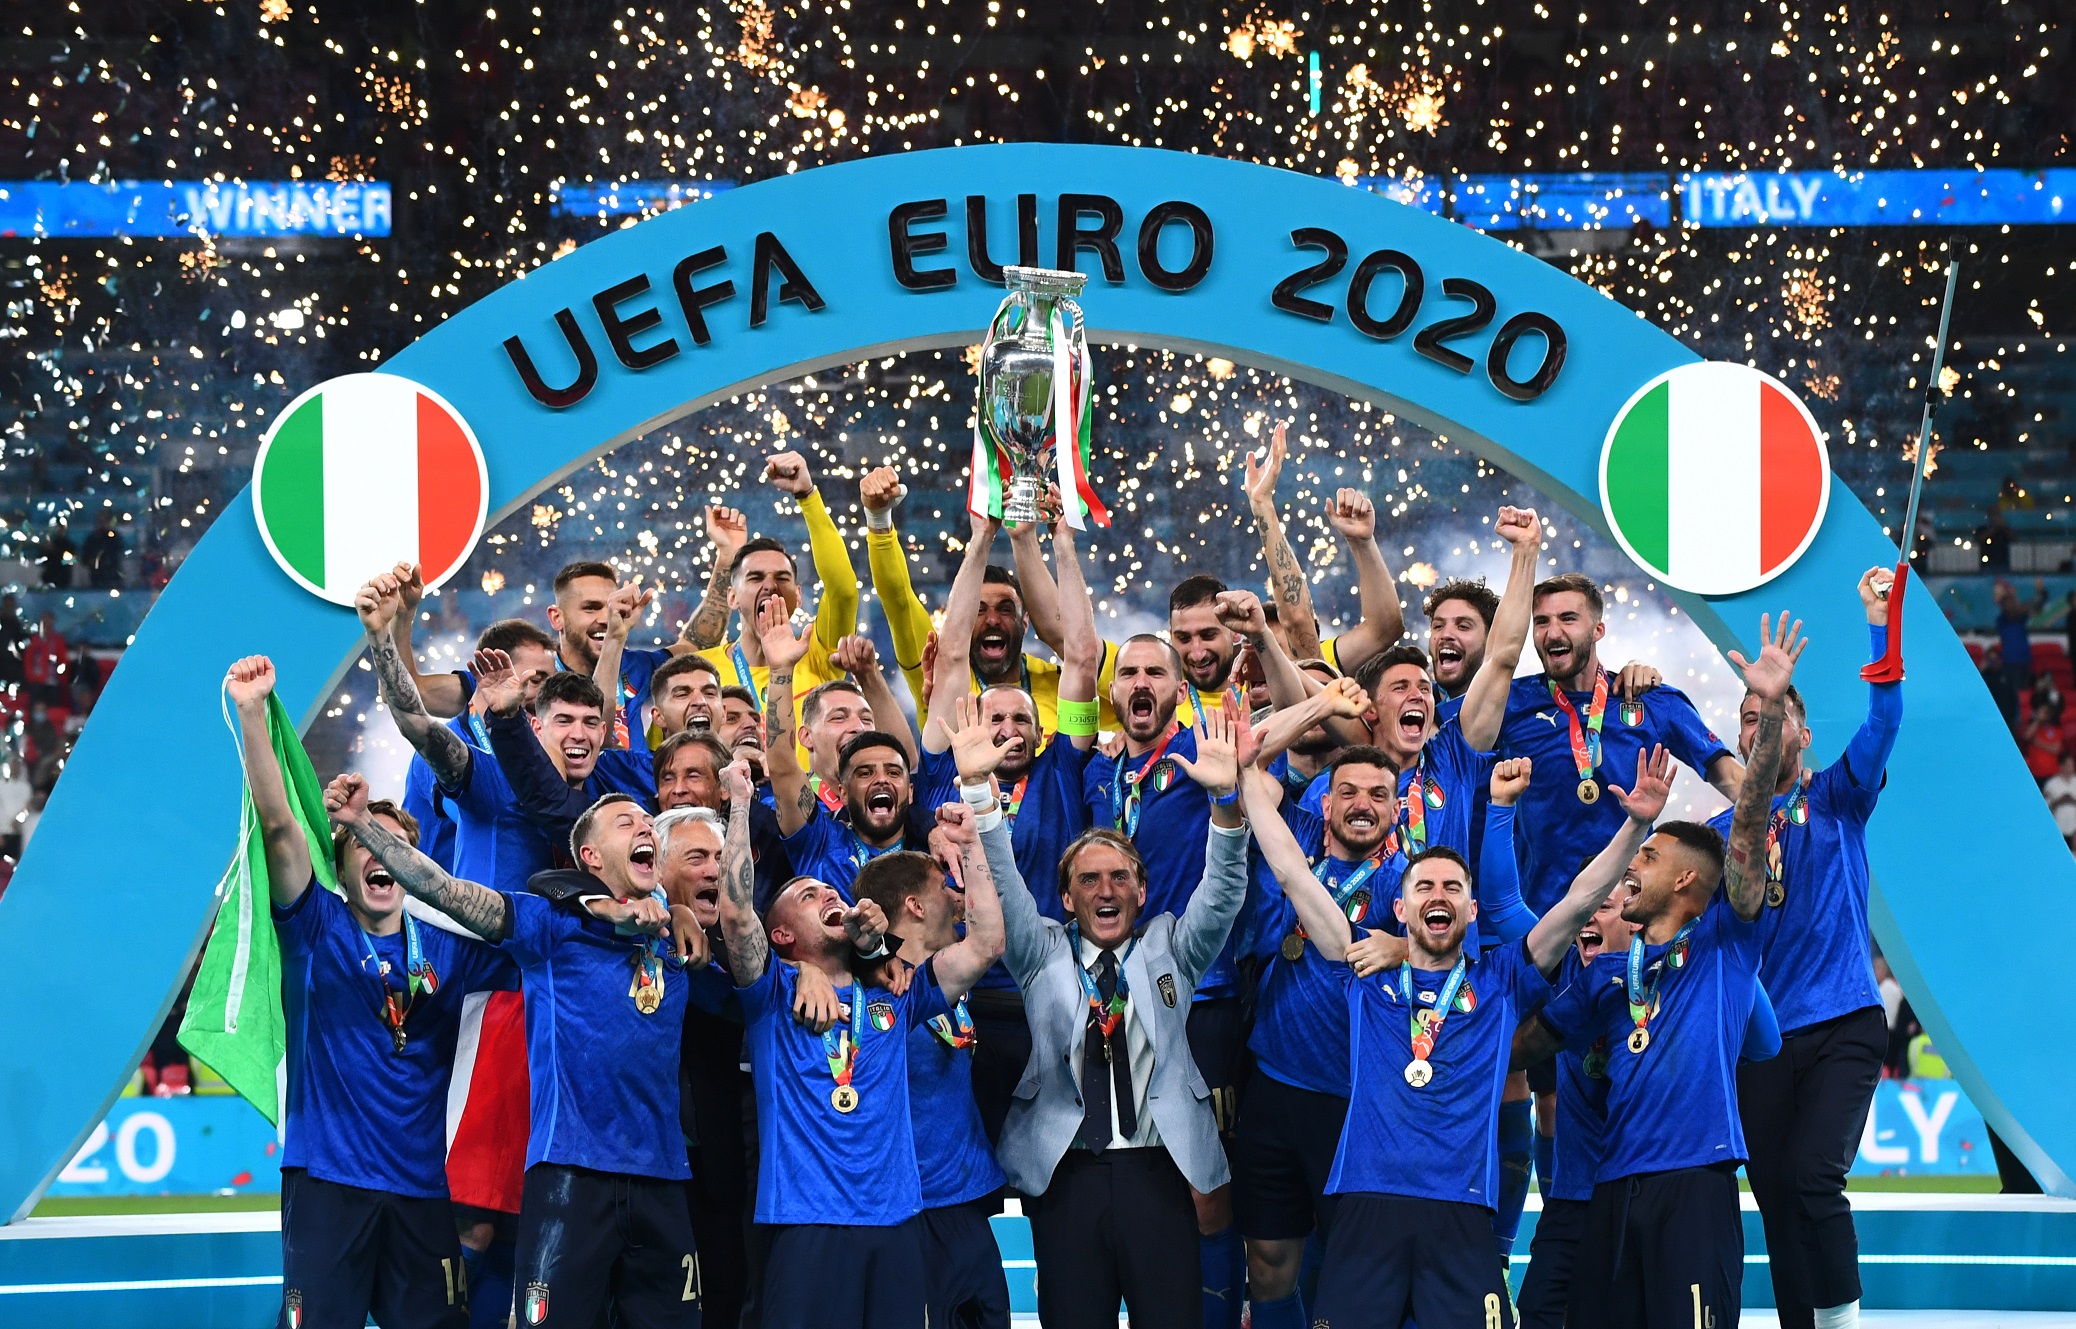 Сборная Италии – действующий чемпион Европы по футболу